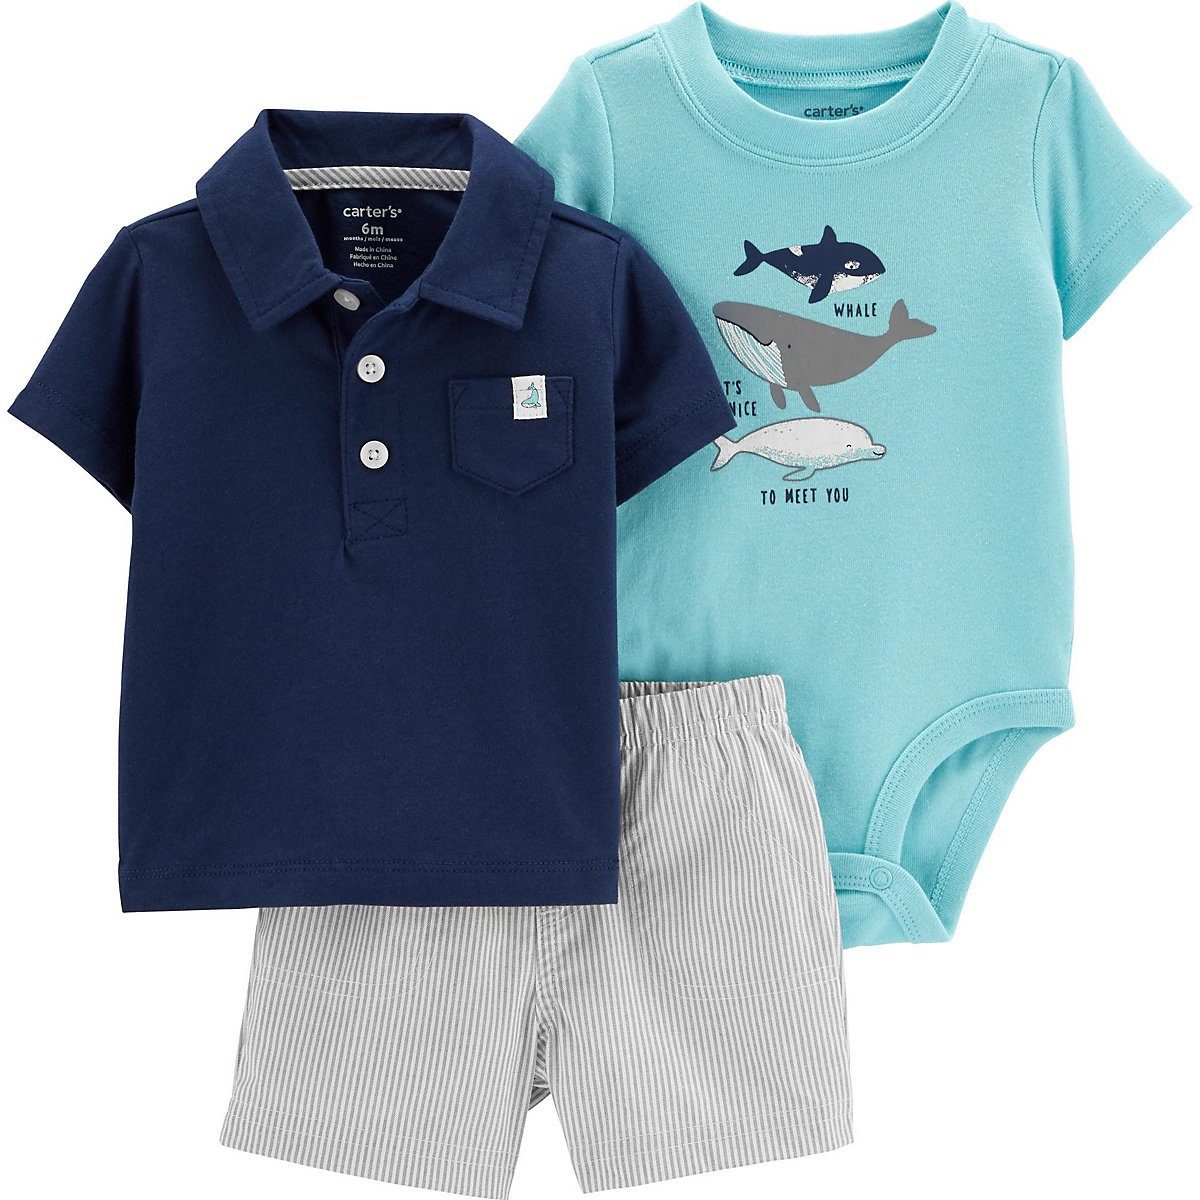 Kinder Jungen (Gr. 50 - 92) Carter`s T-Shirt Baby Set T-Shirt + Shorts + Body für Jungen